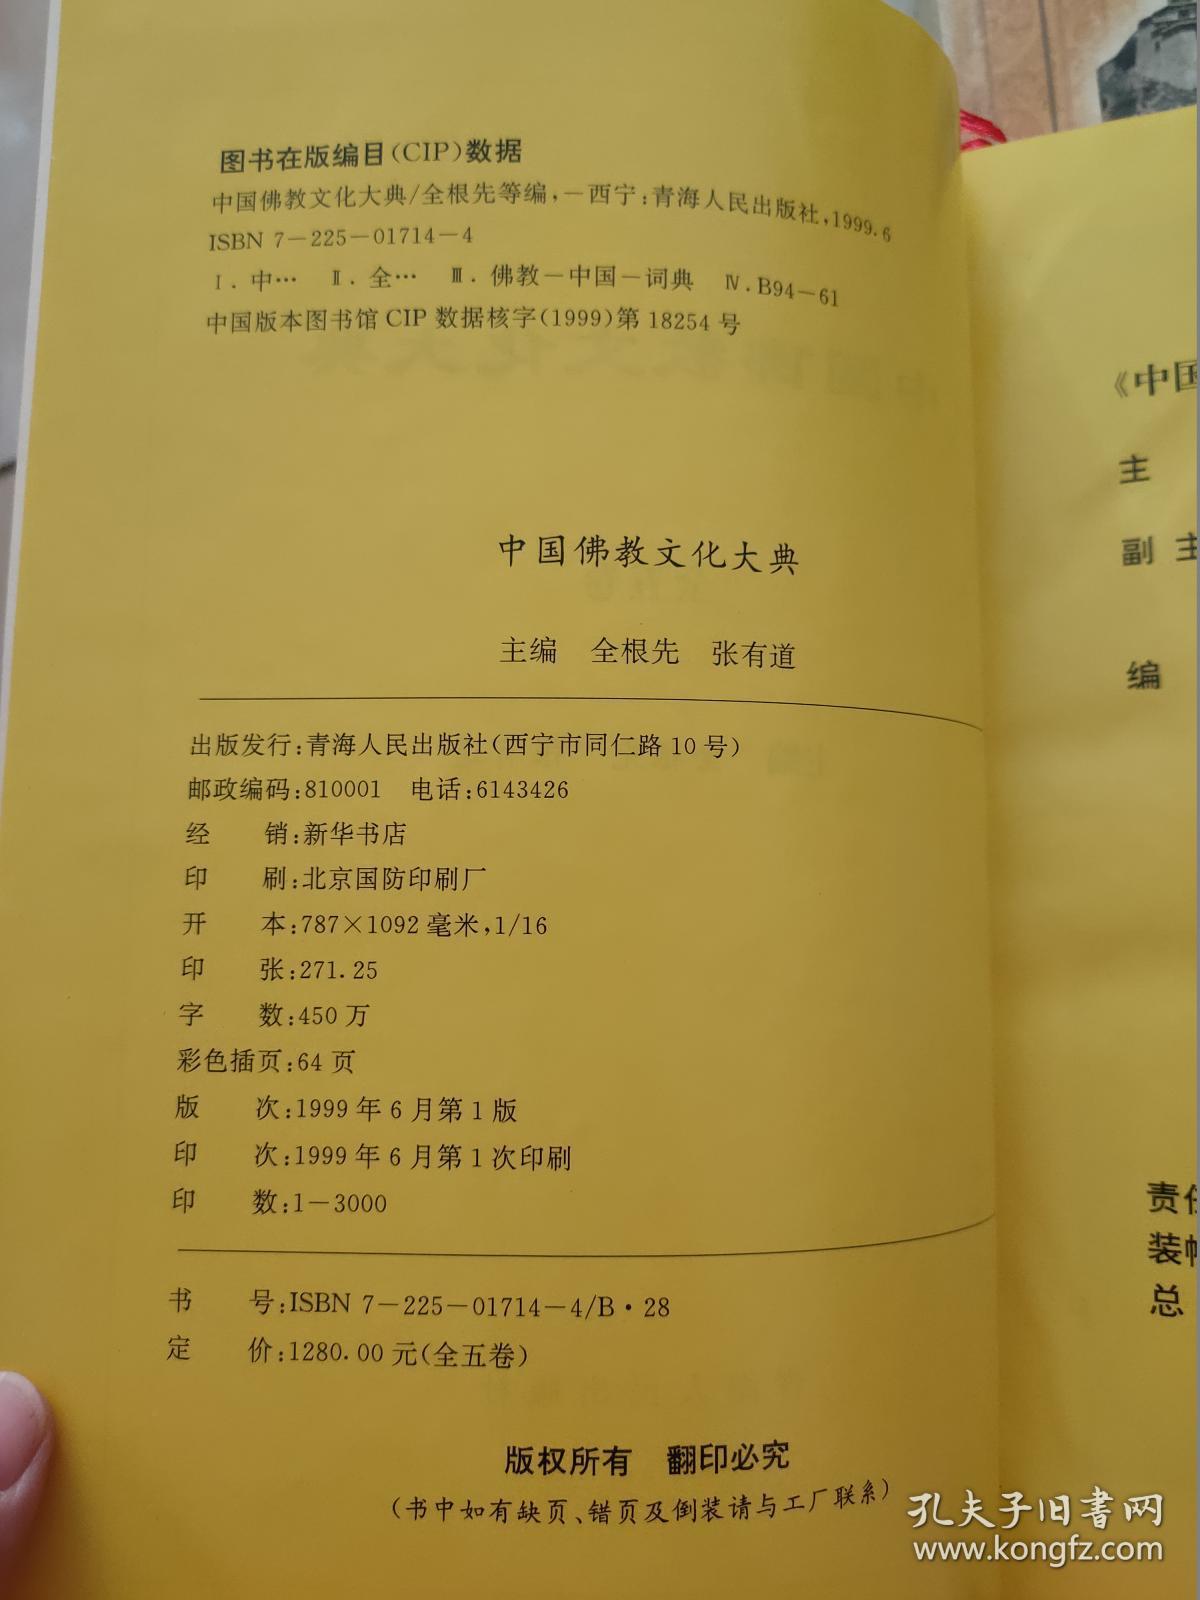 中国佛教文化大典 全五卷